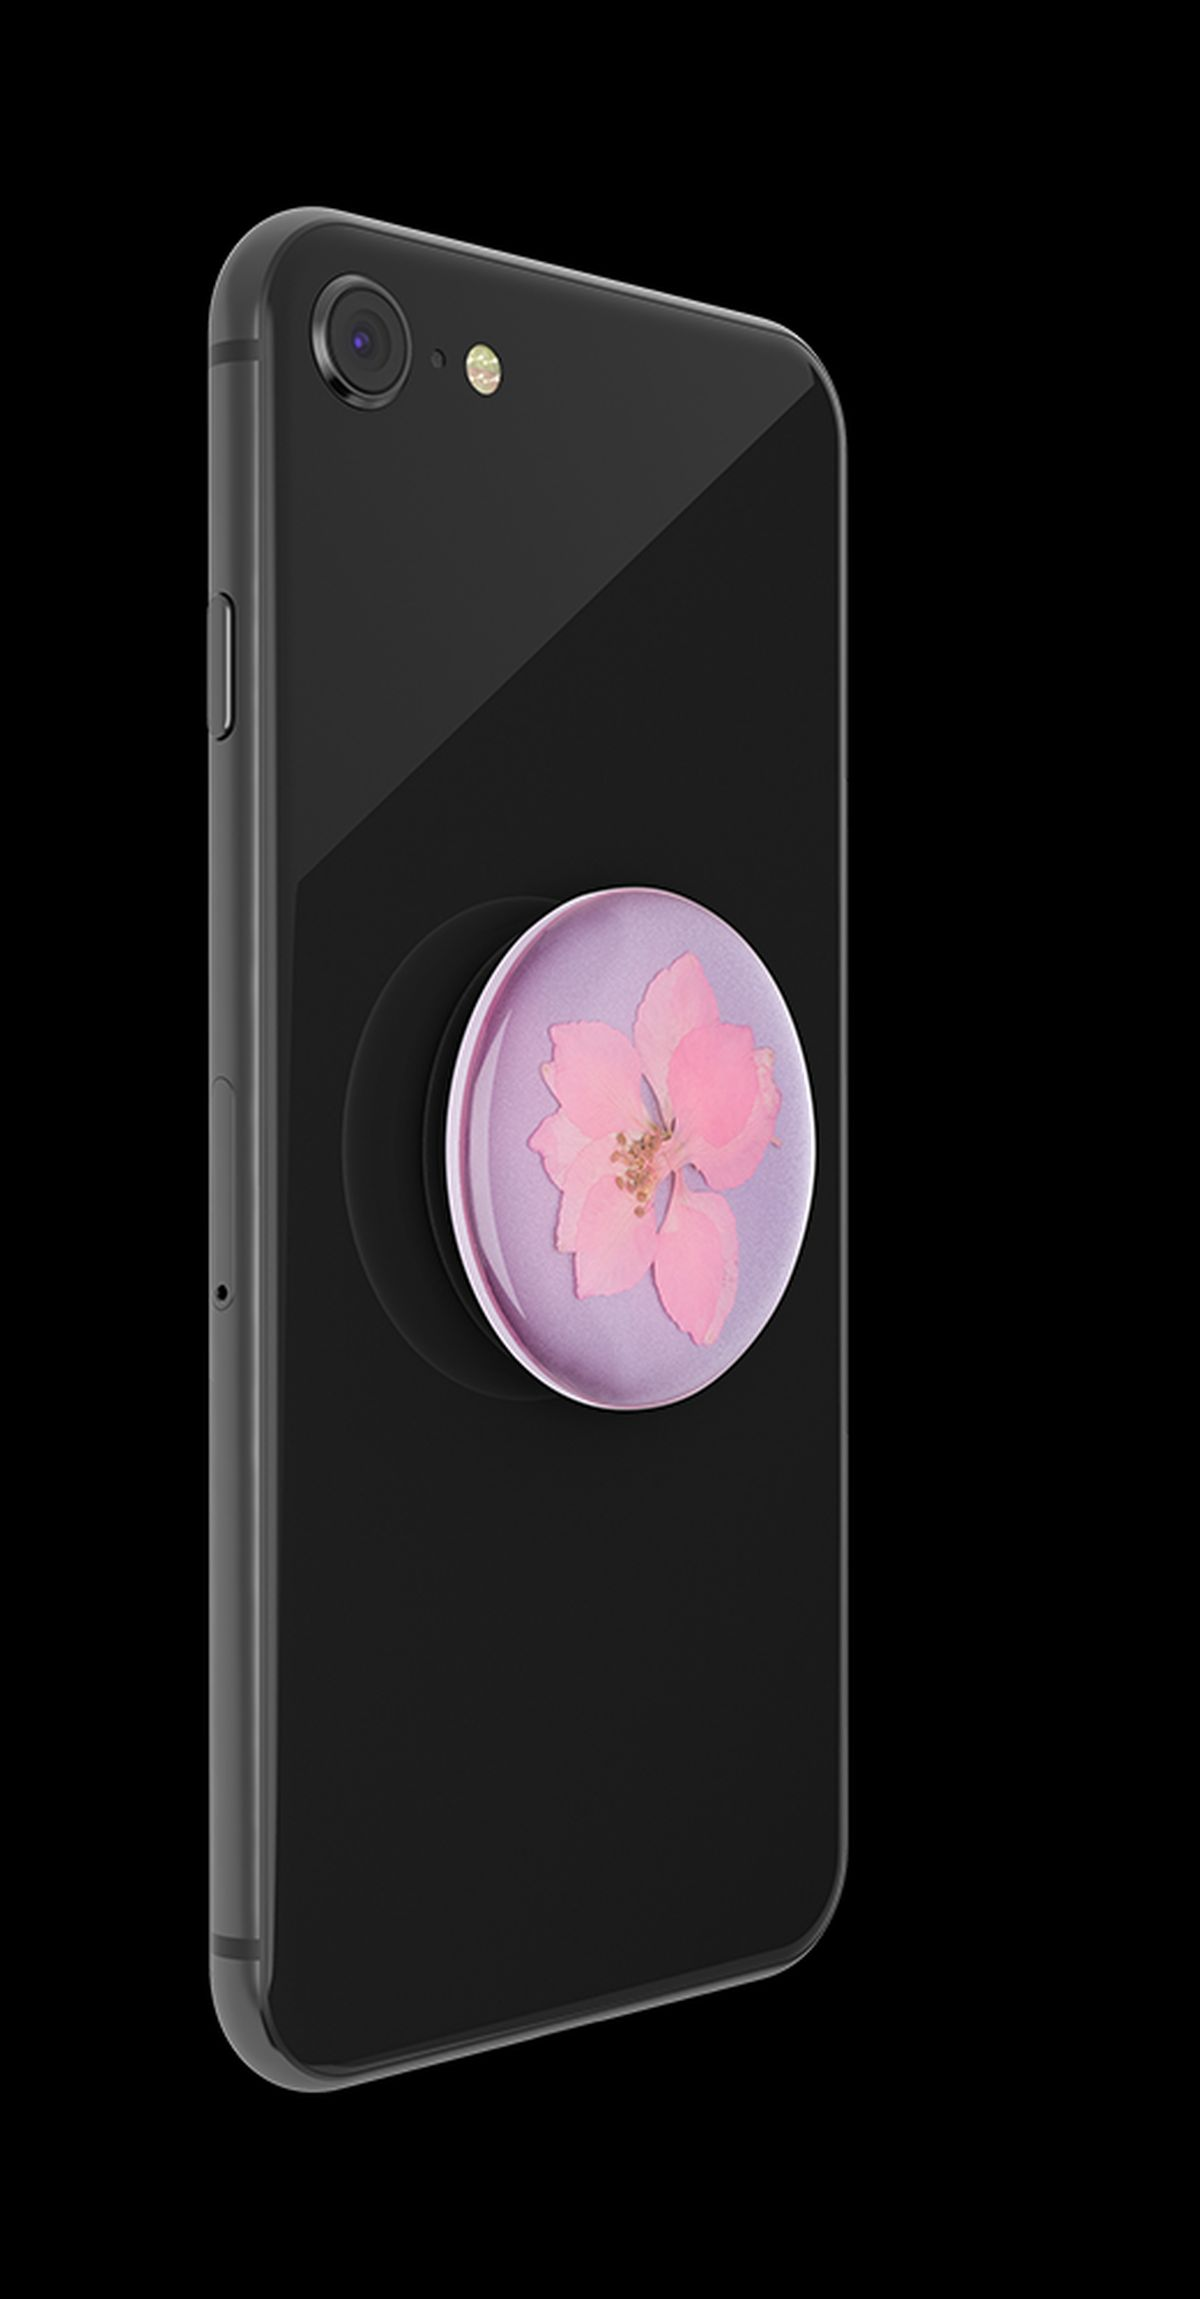 Pink Delphinium - Premium Flower PopGrip Pressed